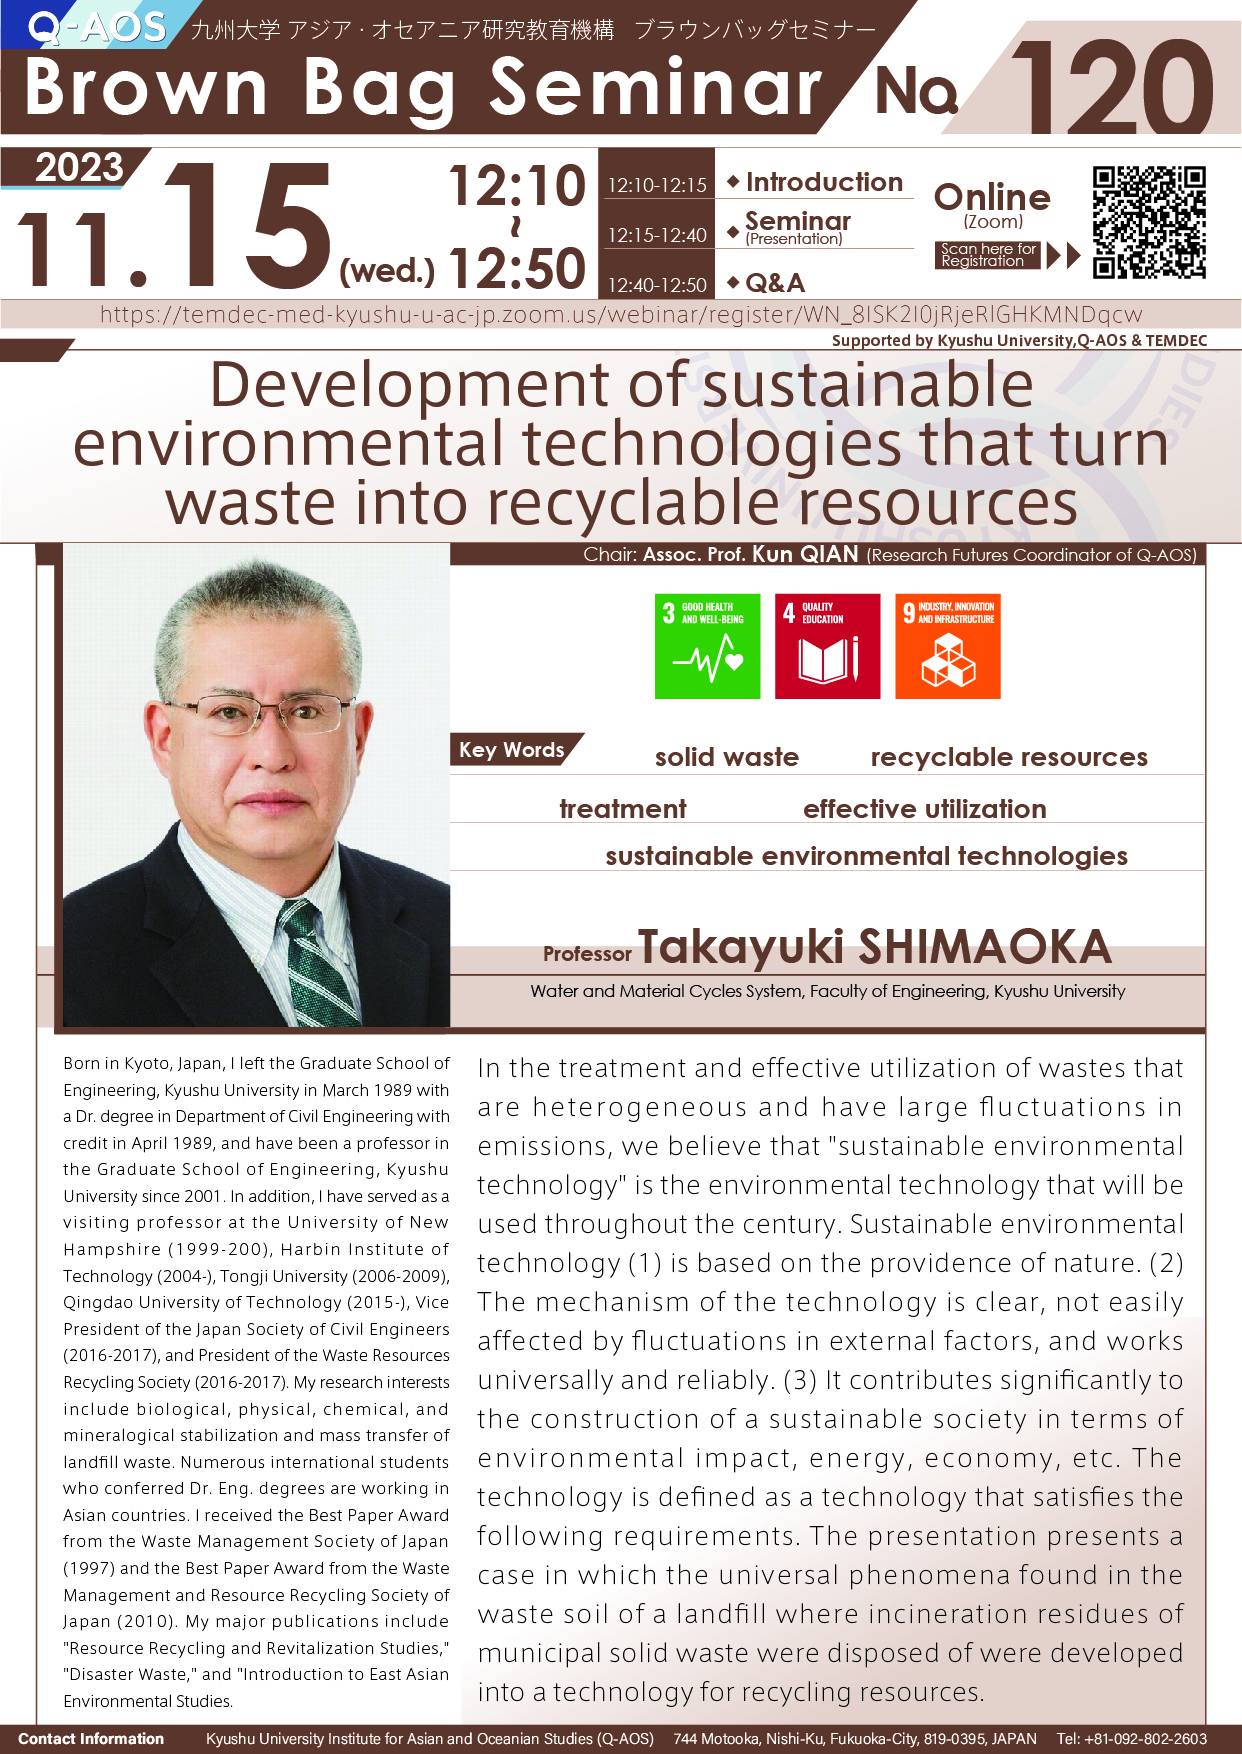 アイキャッチ画像：Q-AOS Brown Bag Seminar Series The 120th Seminar “Development of sustainable environmental technologies that turn waste into recyclable resources”